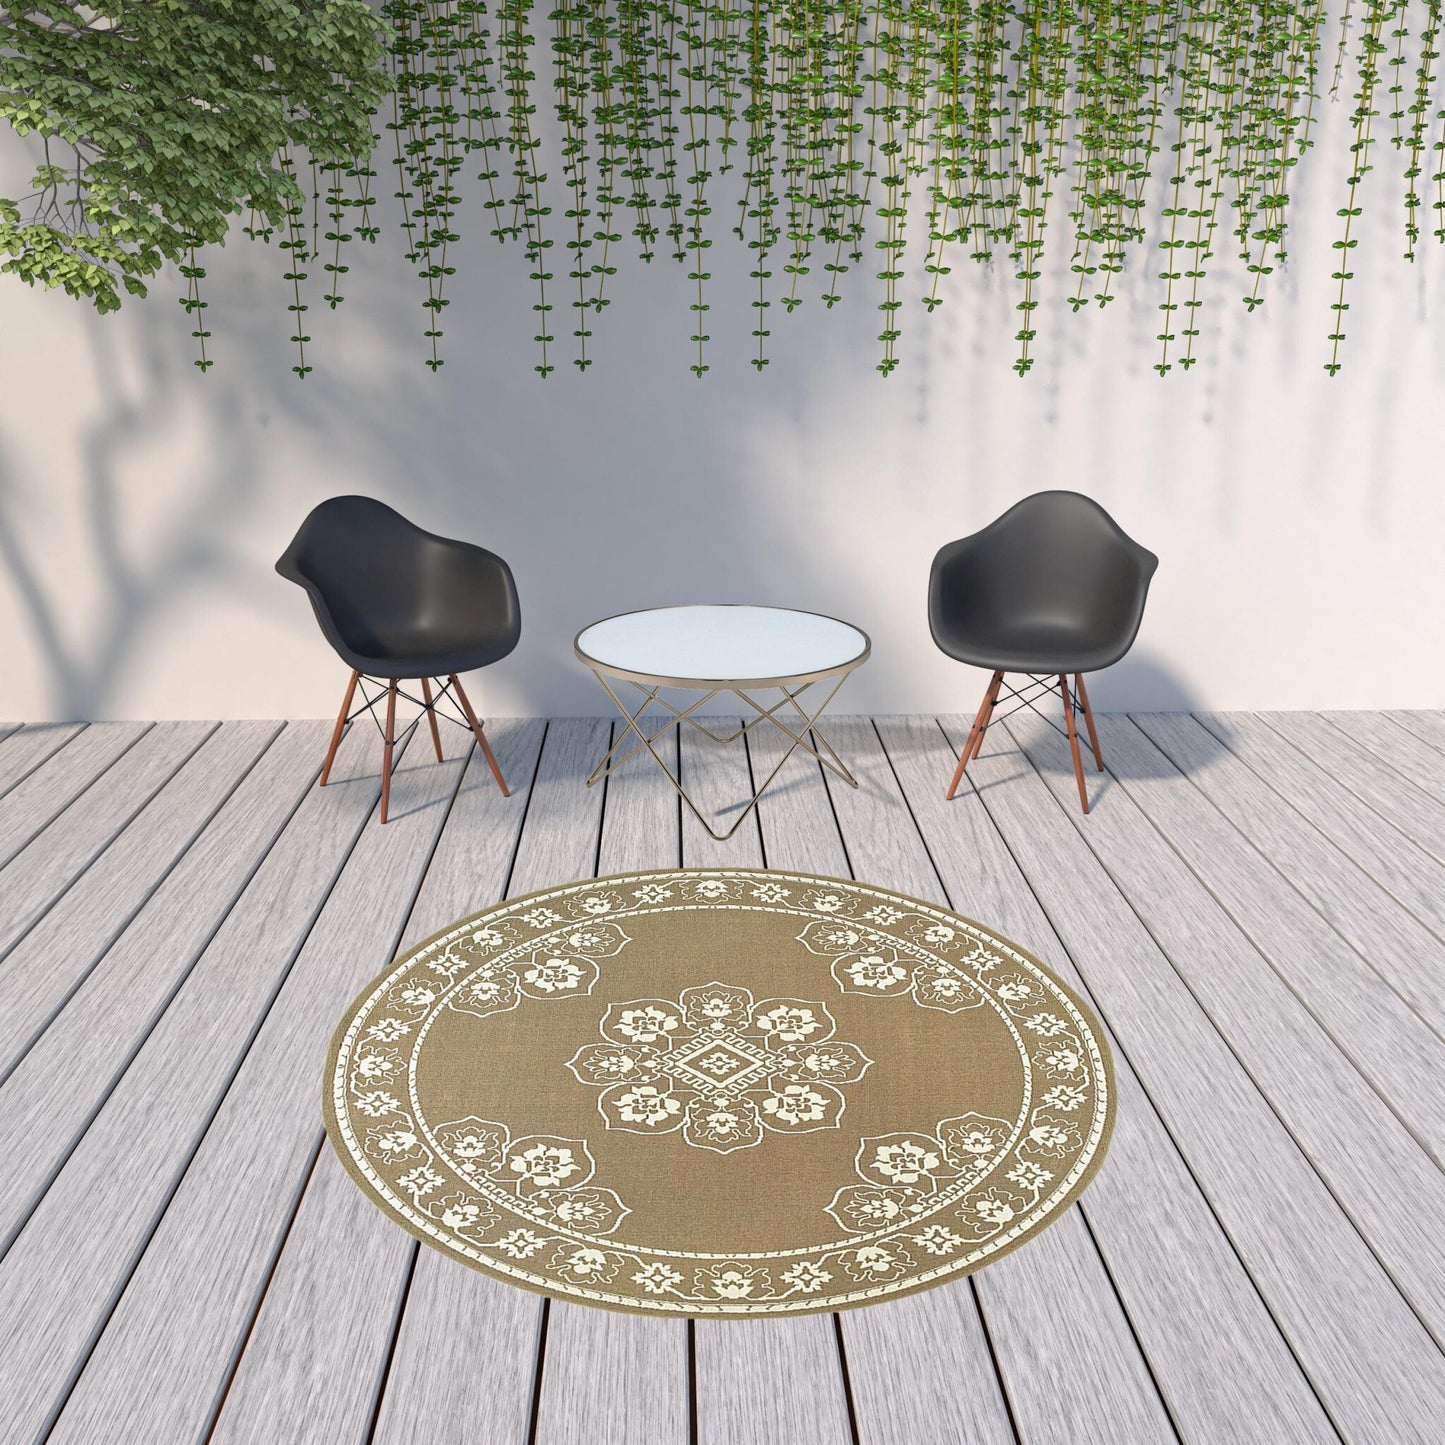 8' x 8' Tan Round Oriental Stain Resistant Indoor Outdoor Area Rug